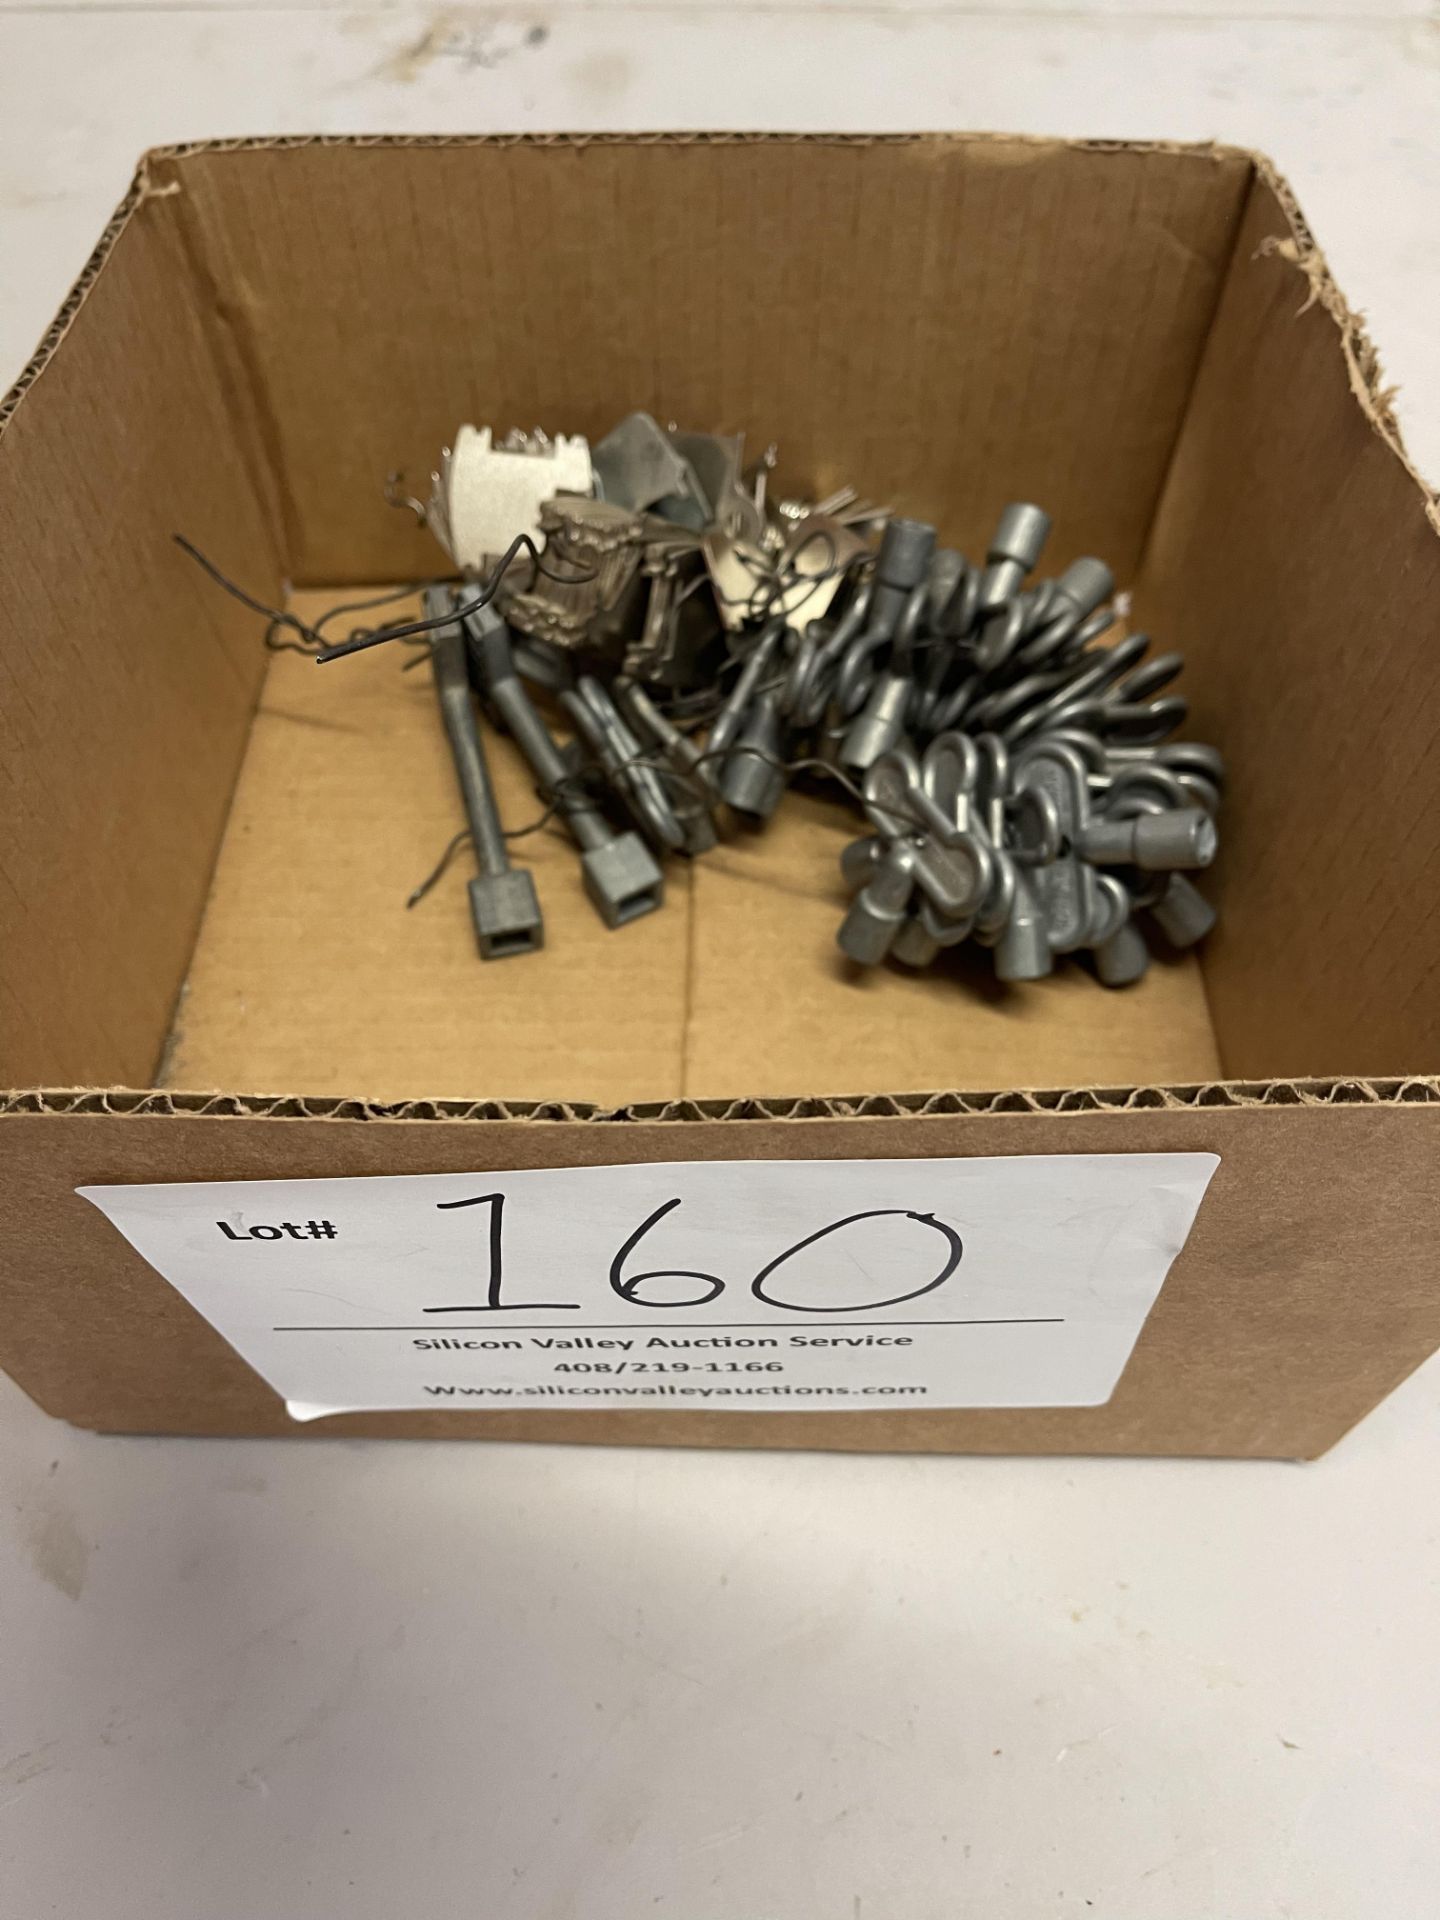 Miscellaneous valve keys